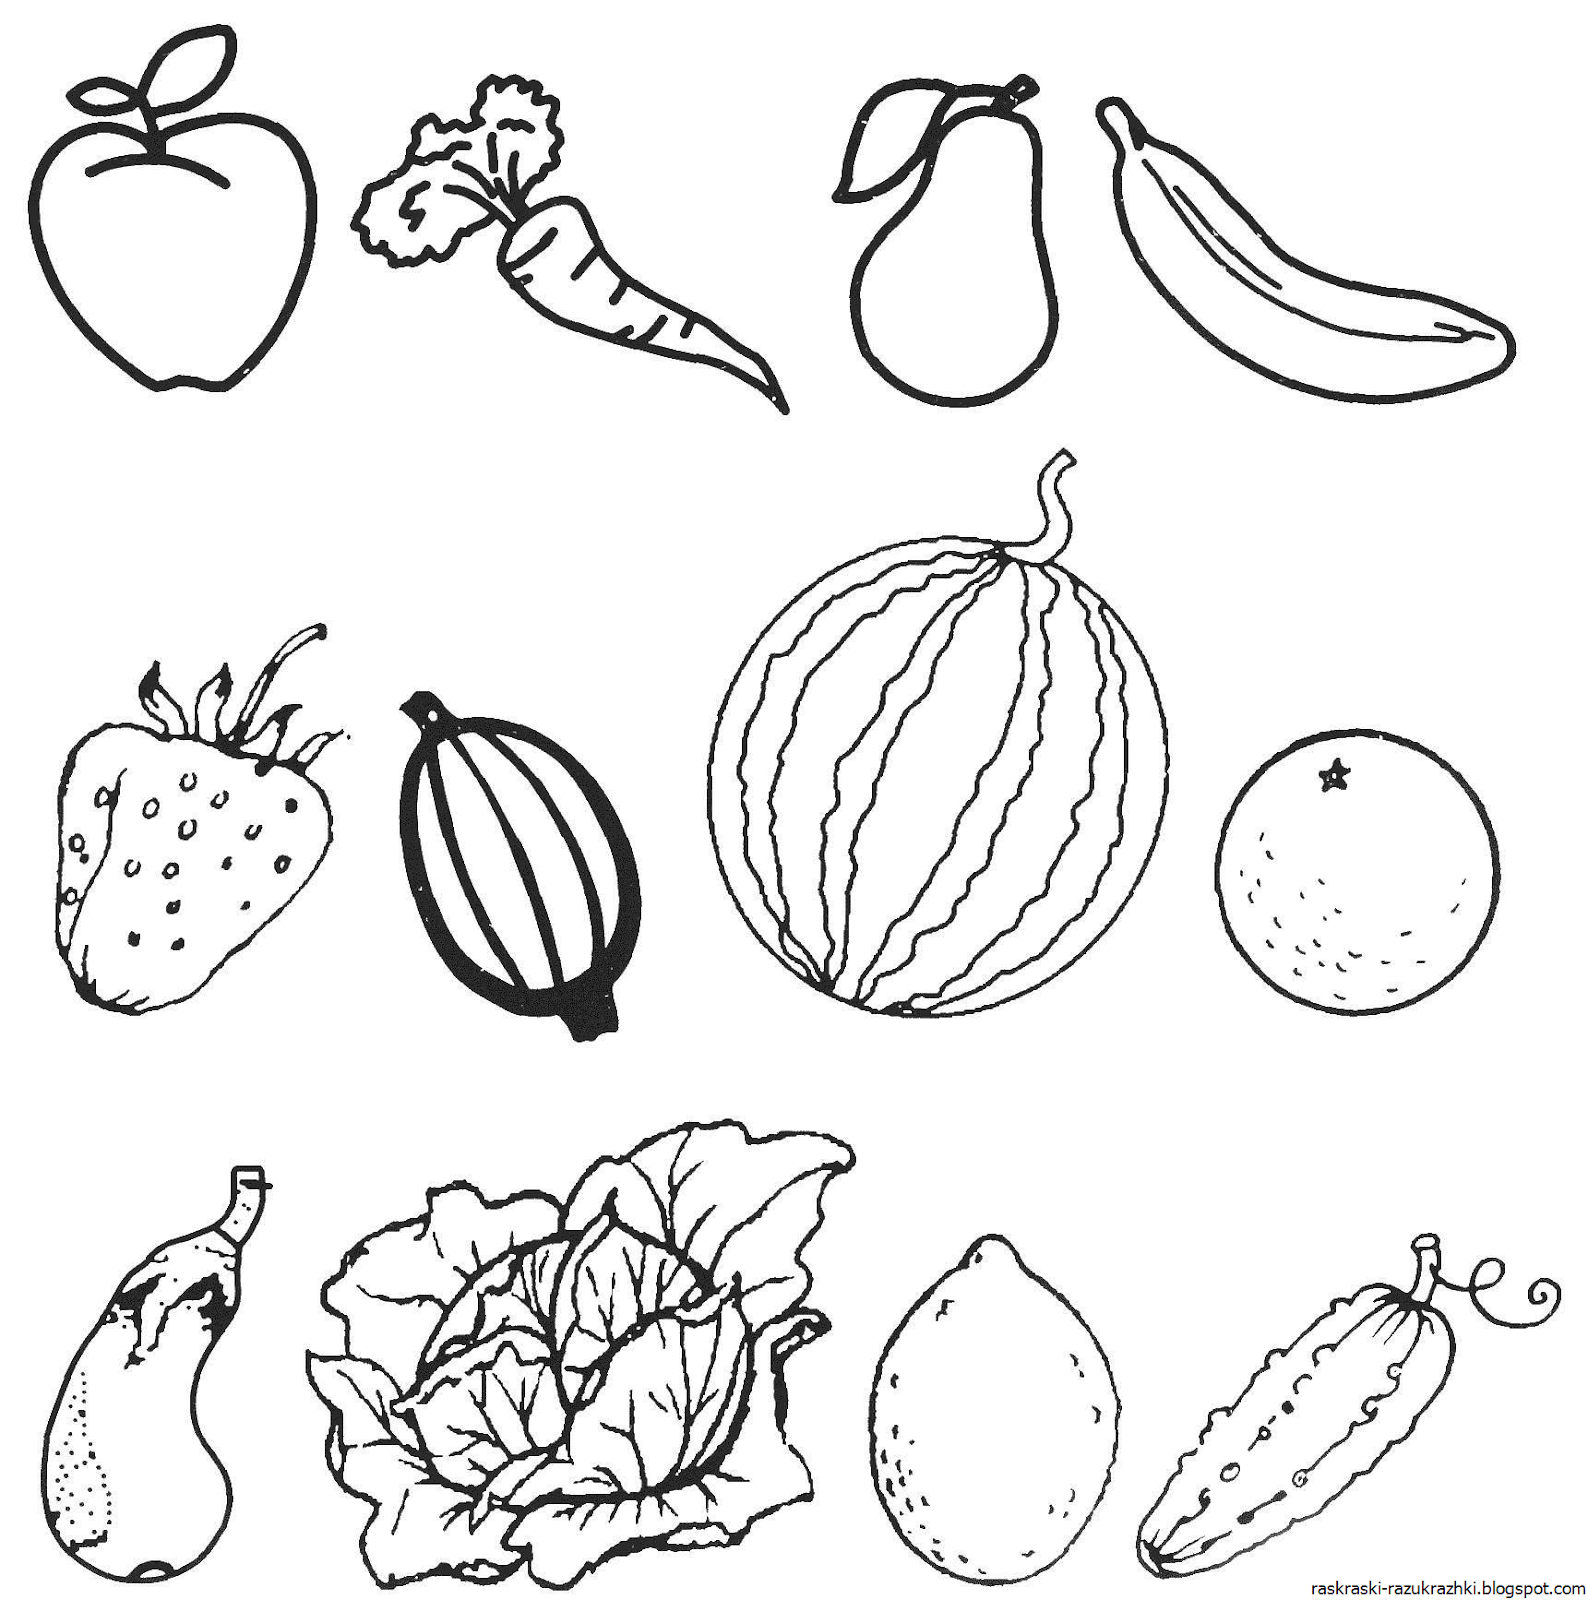 Польза раскрасок овощи и фрукты ресурса Childdevelop